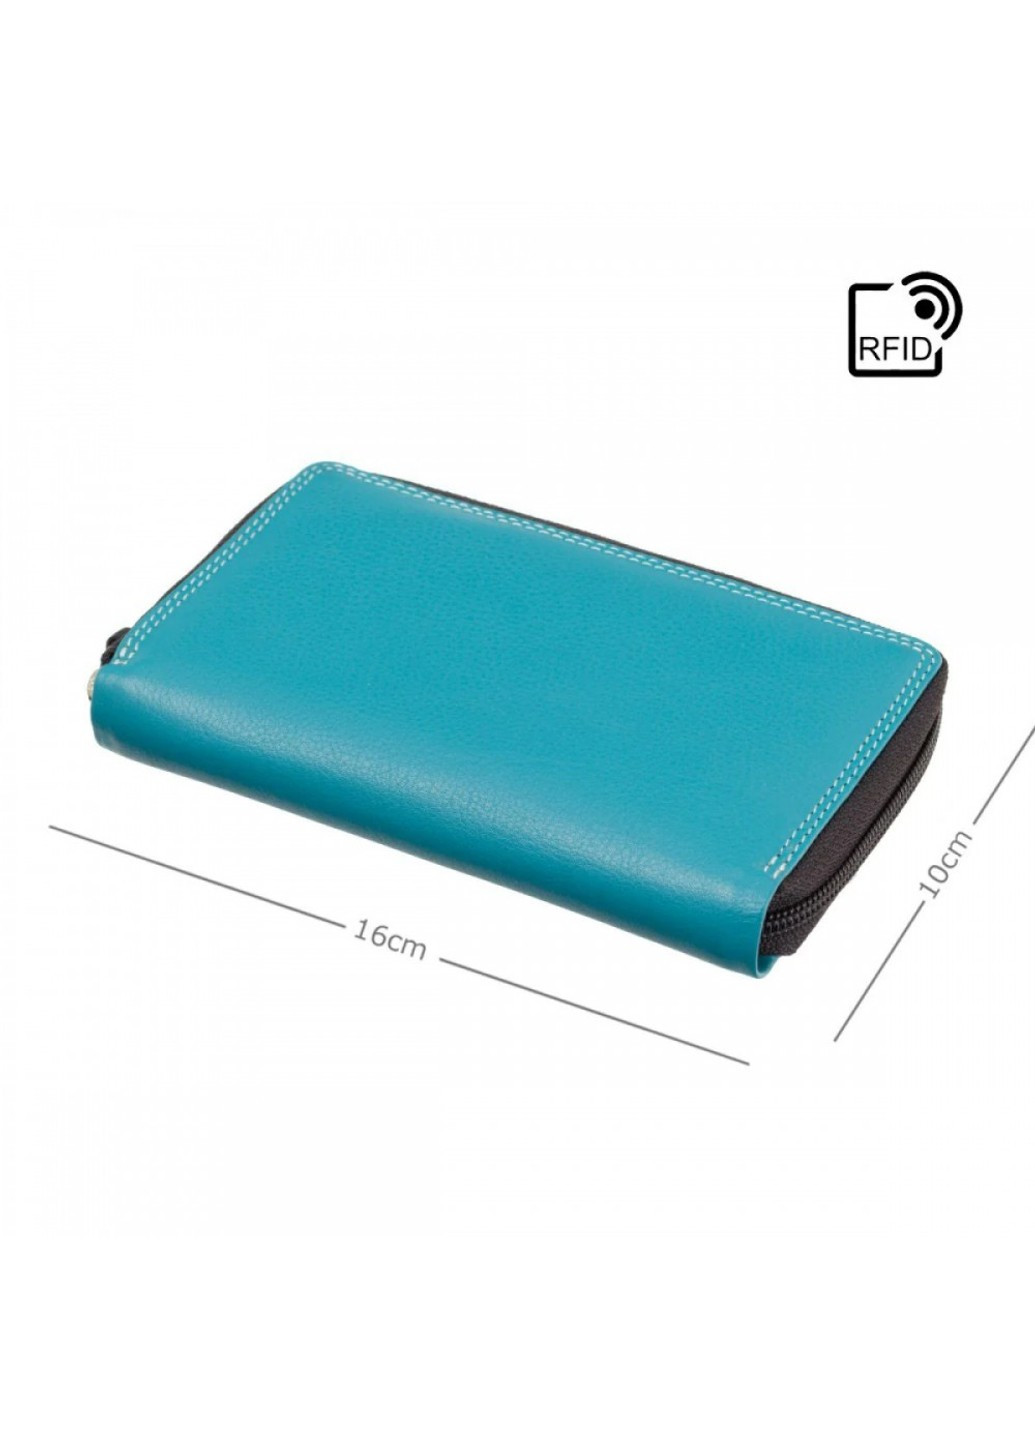 Женский кожаный кошелек с RFID защитой RB98 Aruba (Blue Multi) Visconti (276456832)